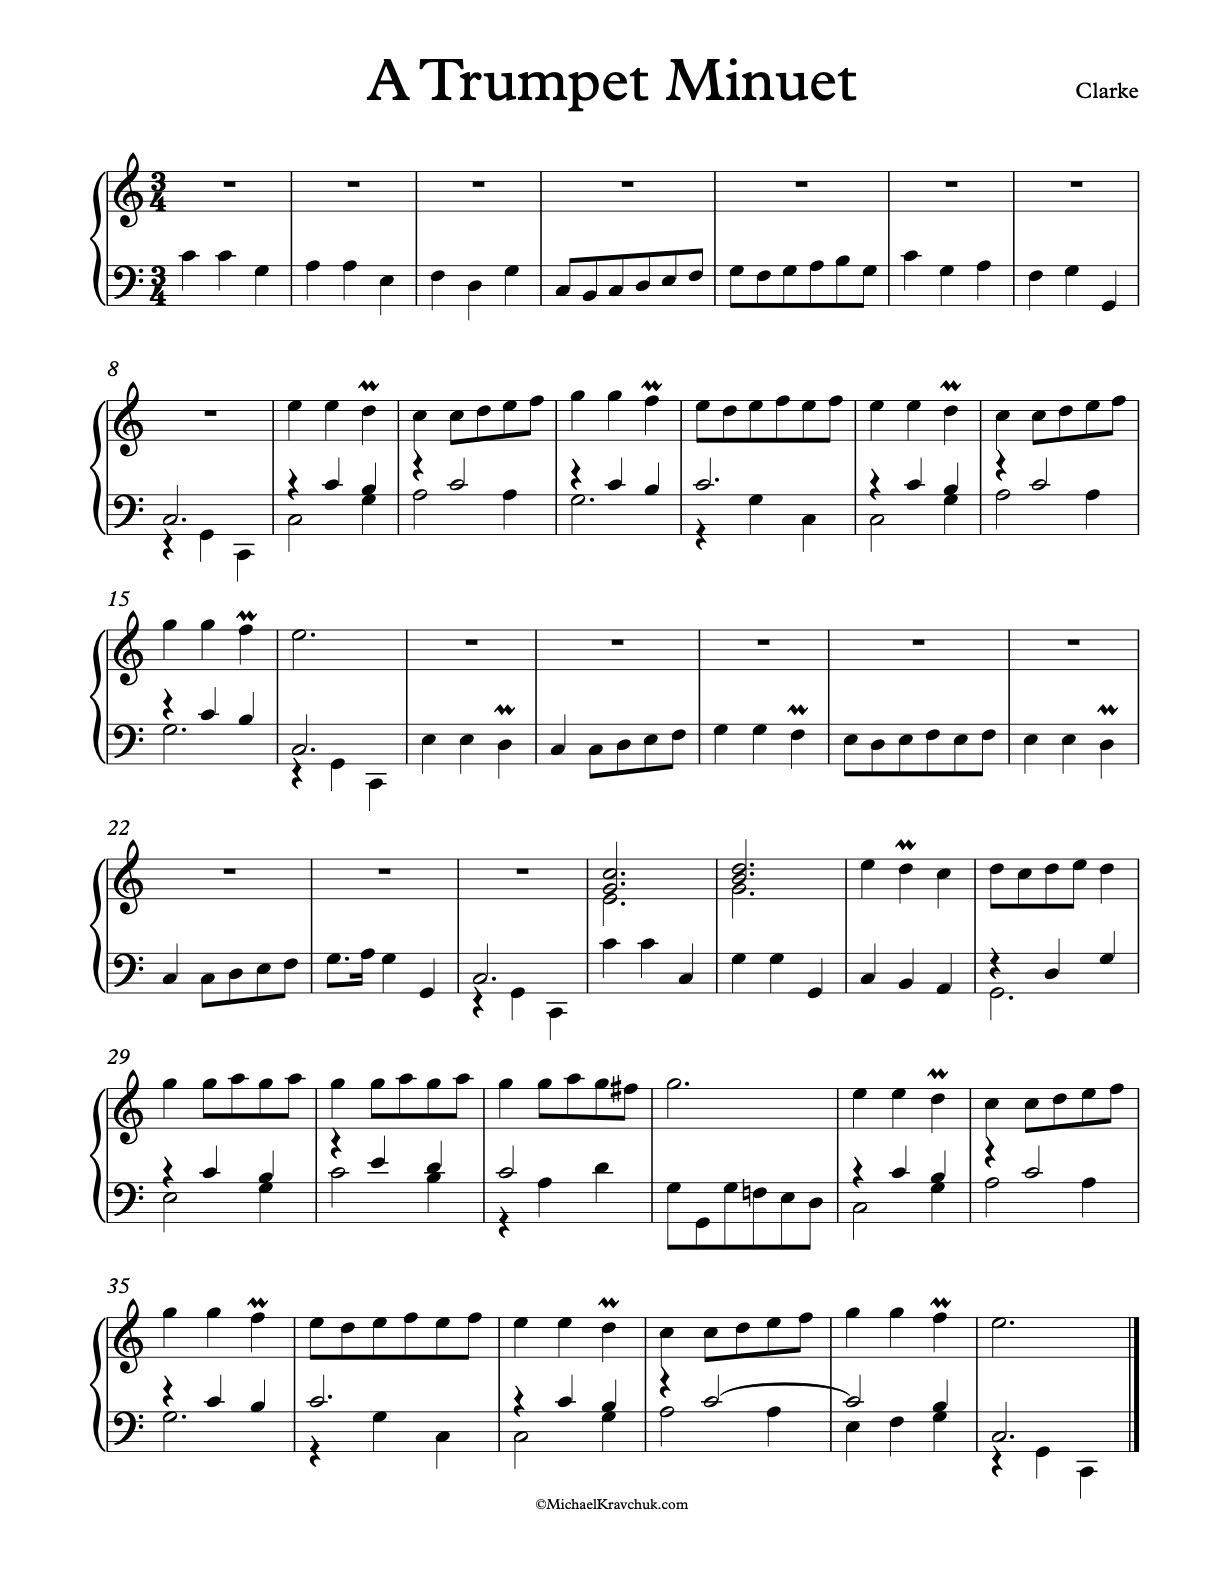 A Trumpet Minuet Piano Sheet Music